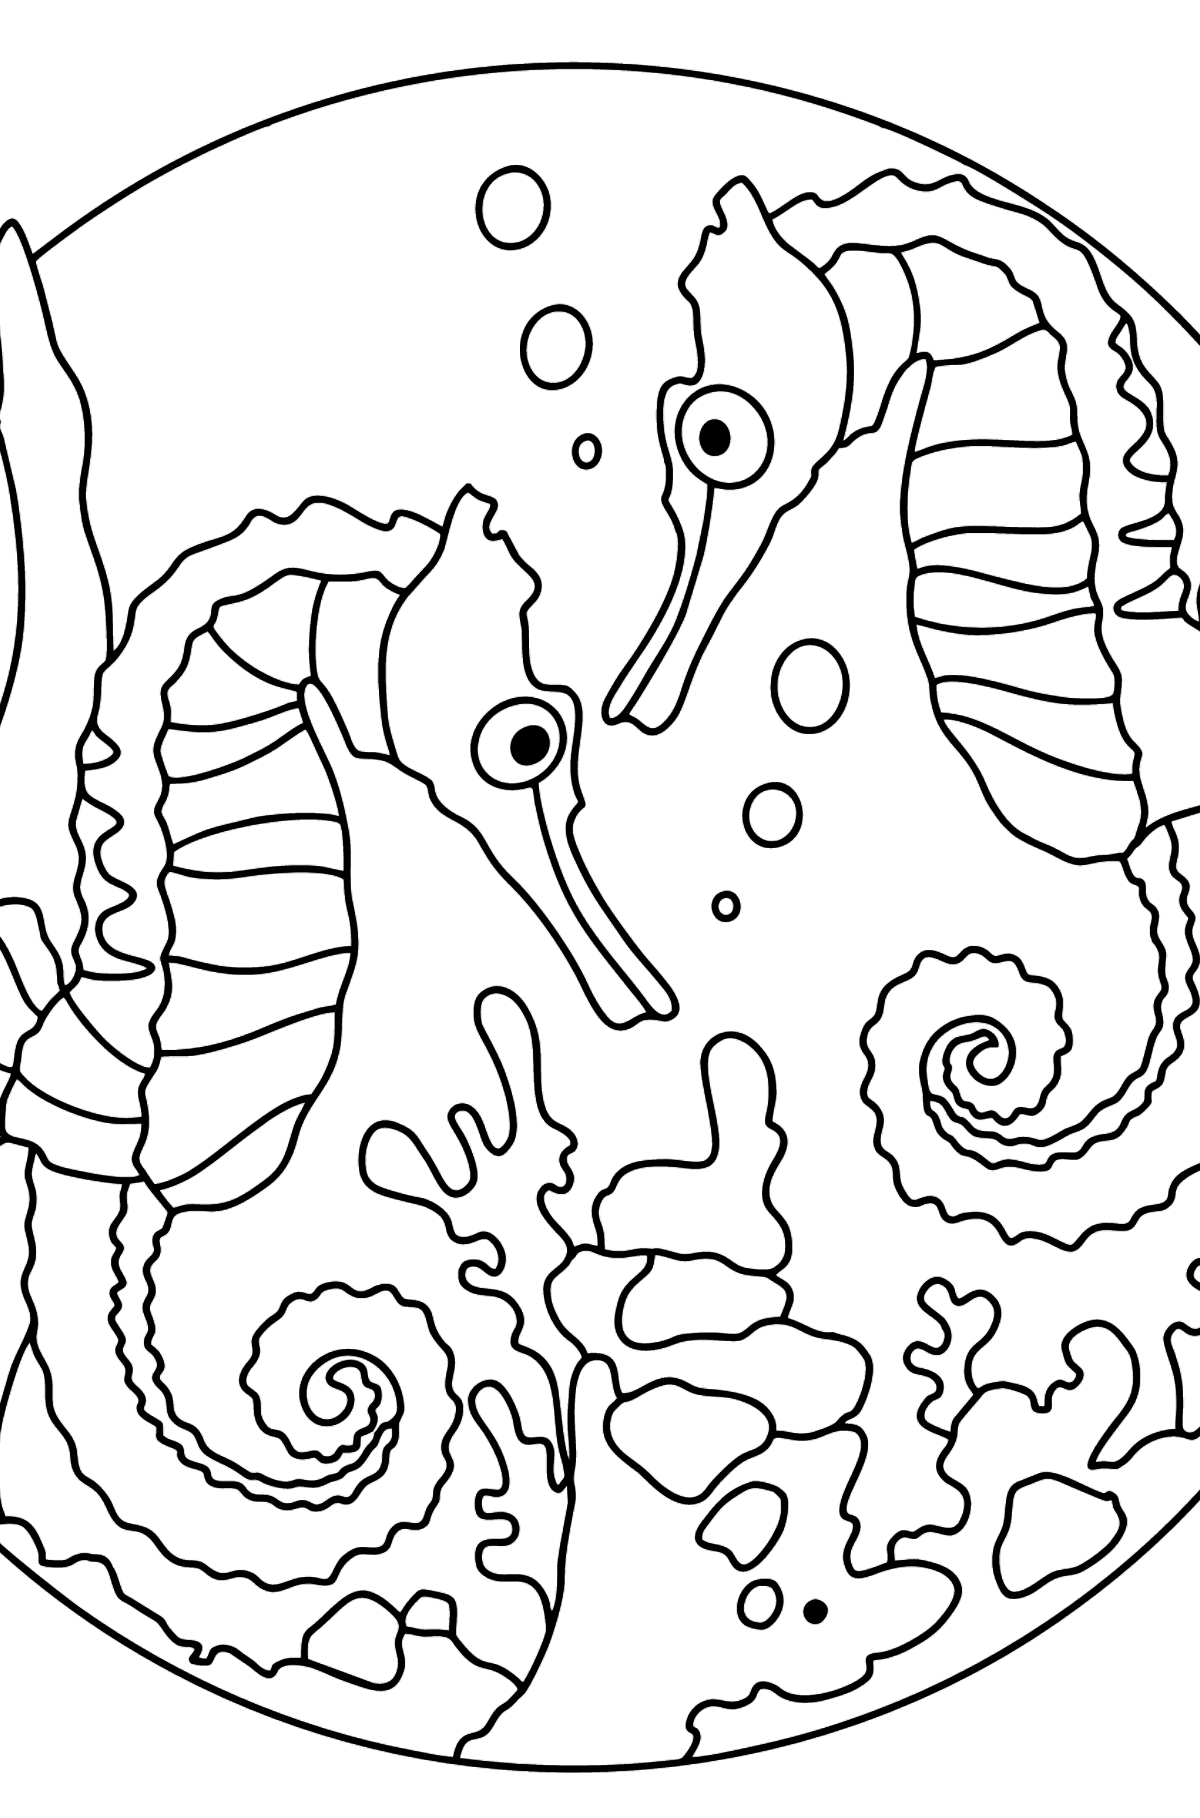 Раскраска экзотические животные - два морских конька - Картинки для Детей